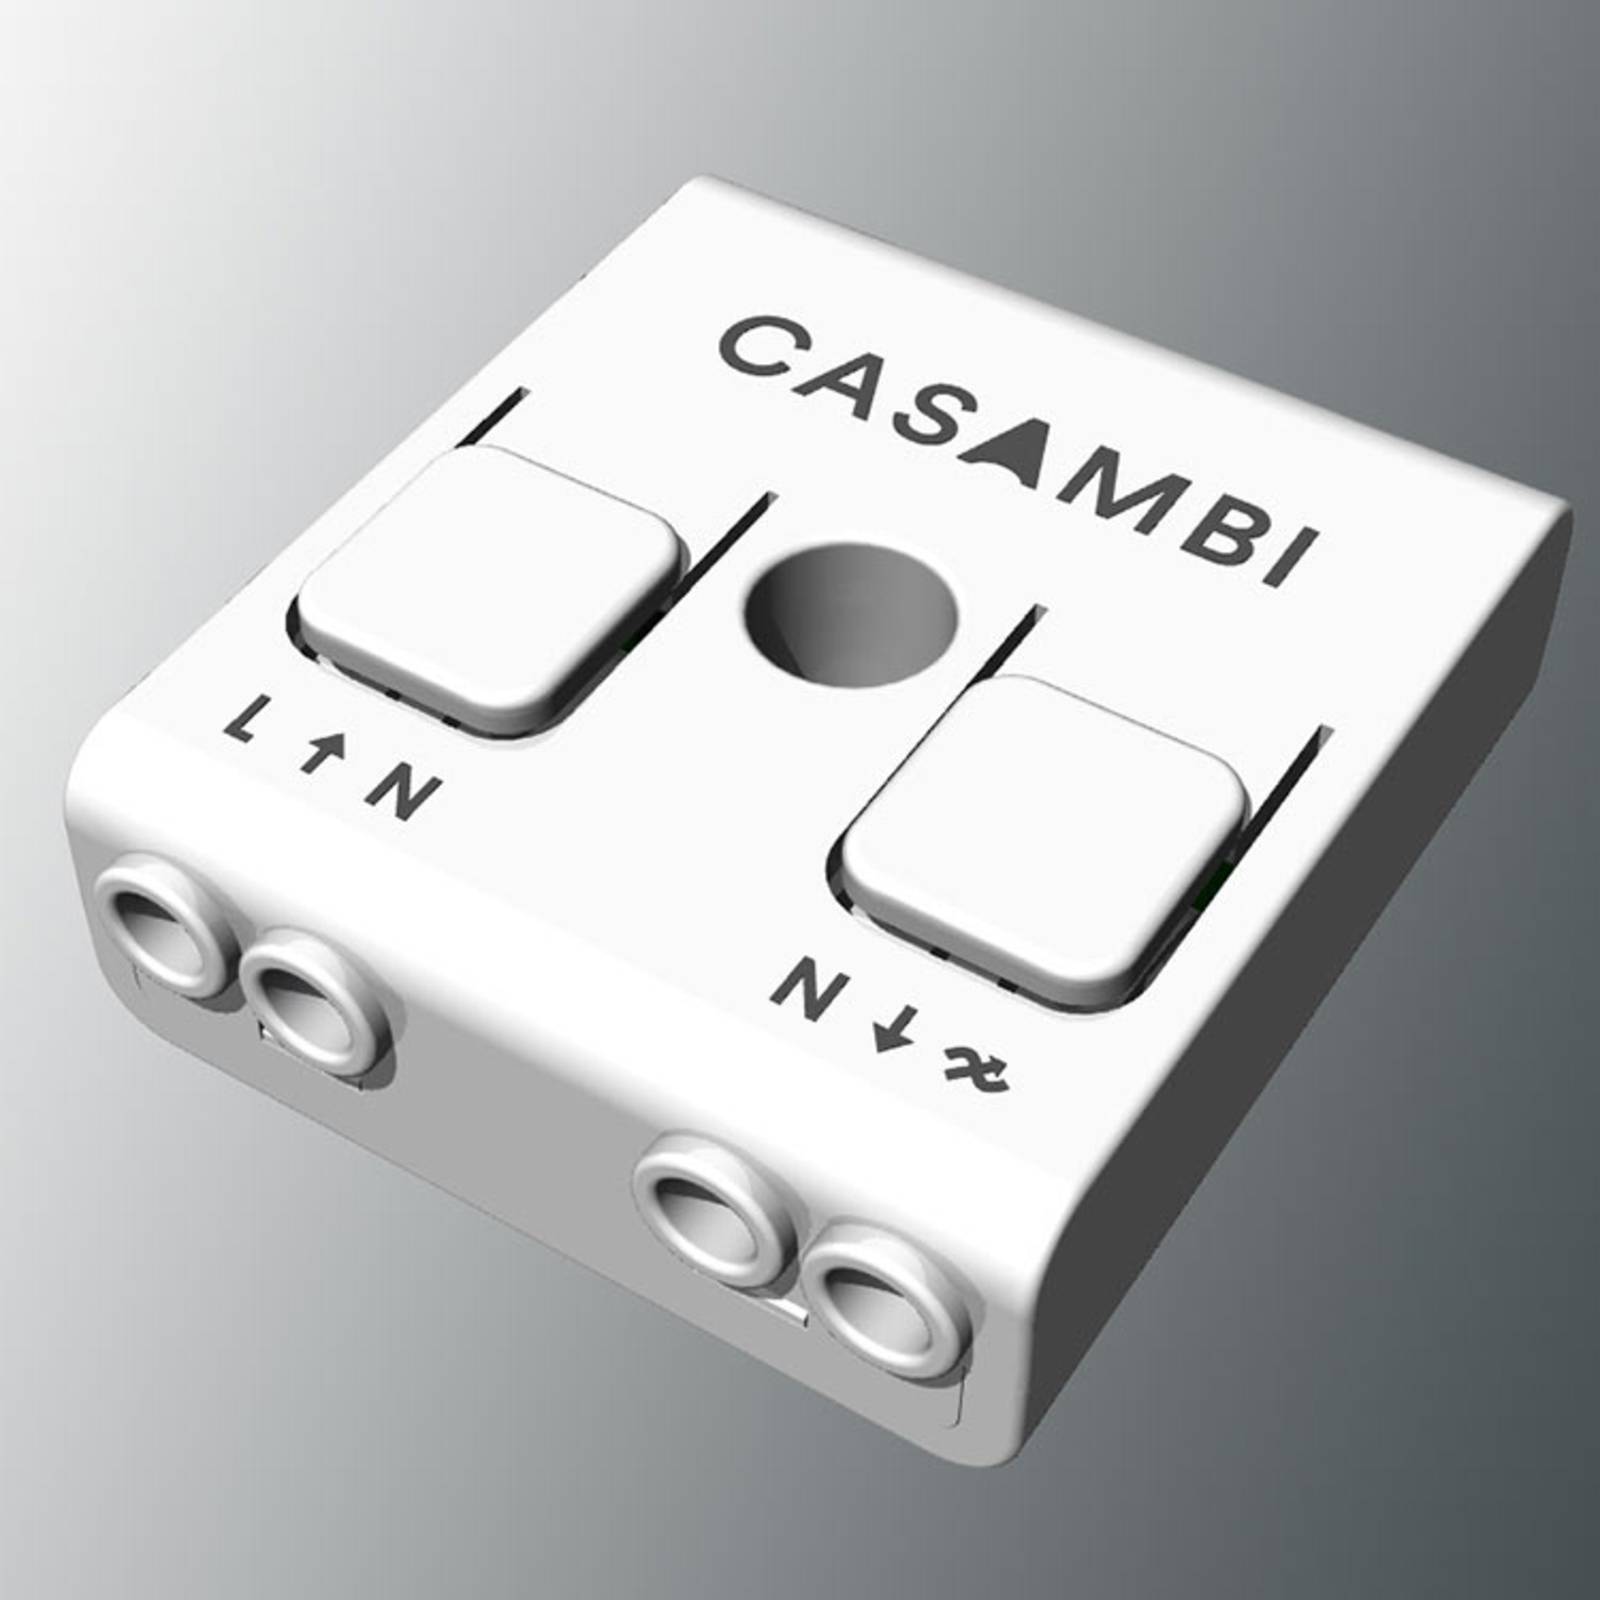 Kit per App Casambi con lampade BOPP